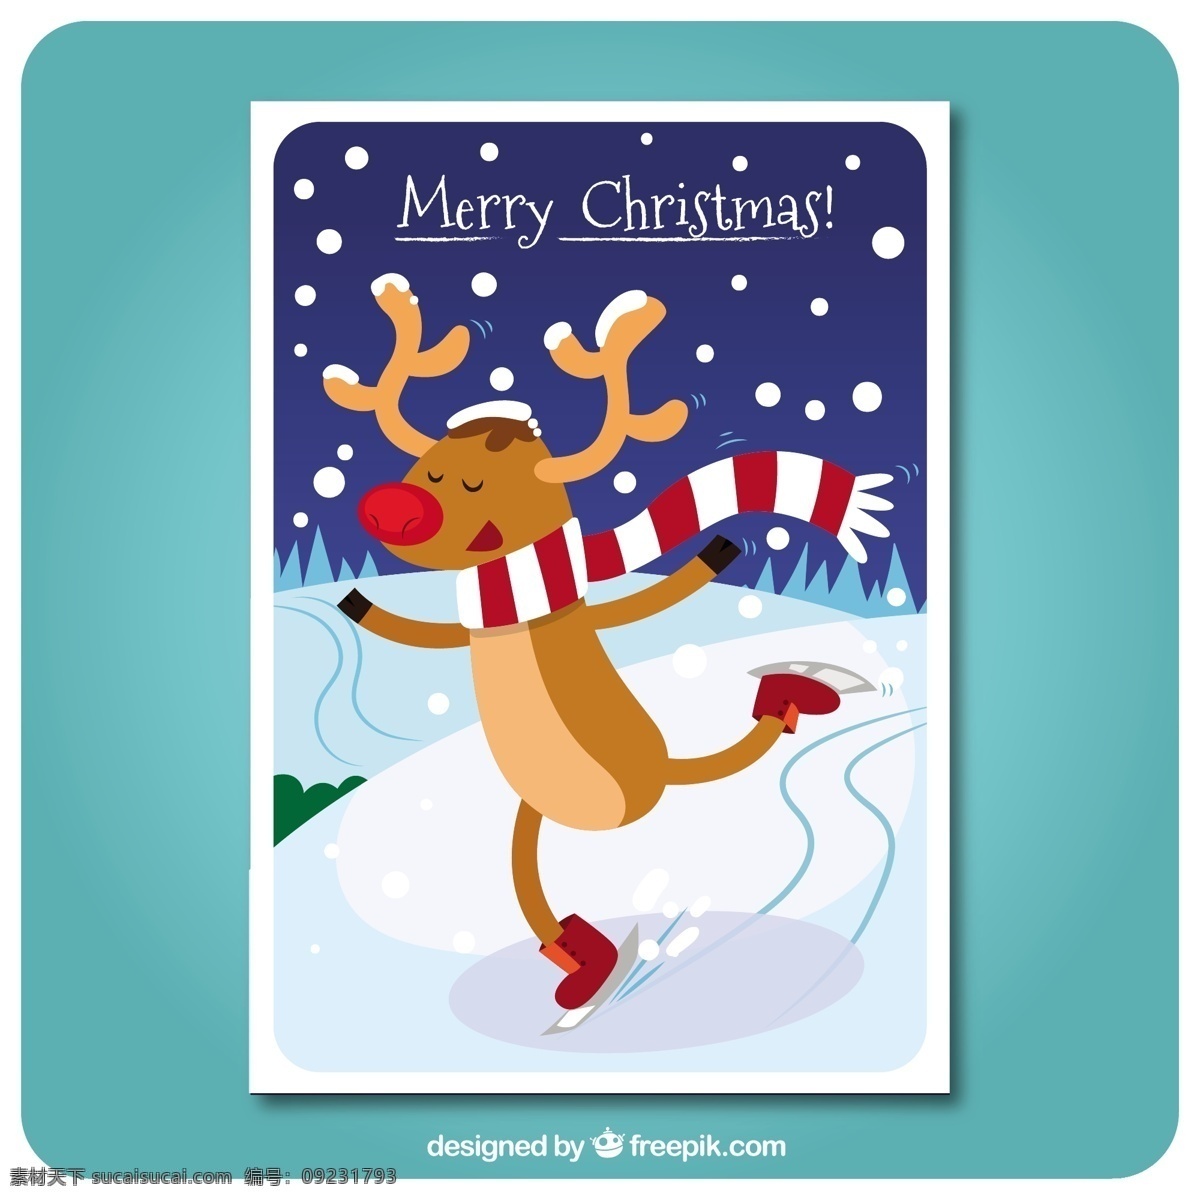 驯鹿做溜冰卡 圣诞卡 动物 圣诞快乐 冬天快乐 性格 圣诞 庆祝 冰 假日 驯鹿 好玩 有趣 节日快乐 贺卡 问候 季节 节日 青色 天蓝色